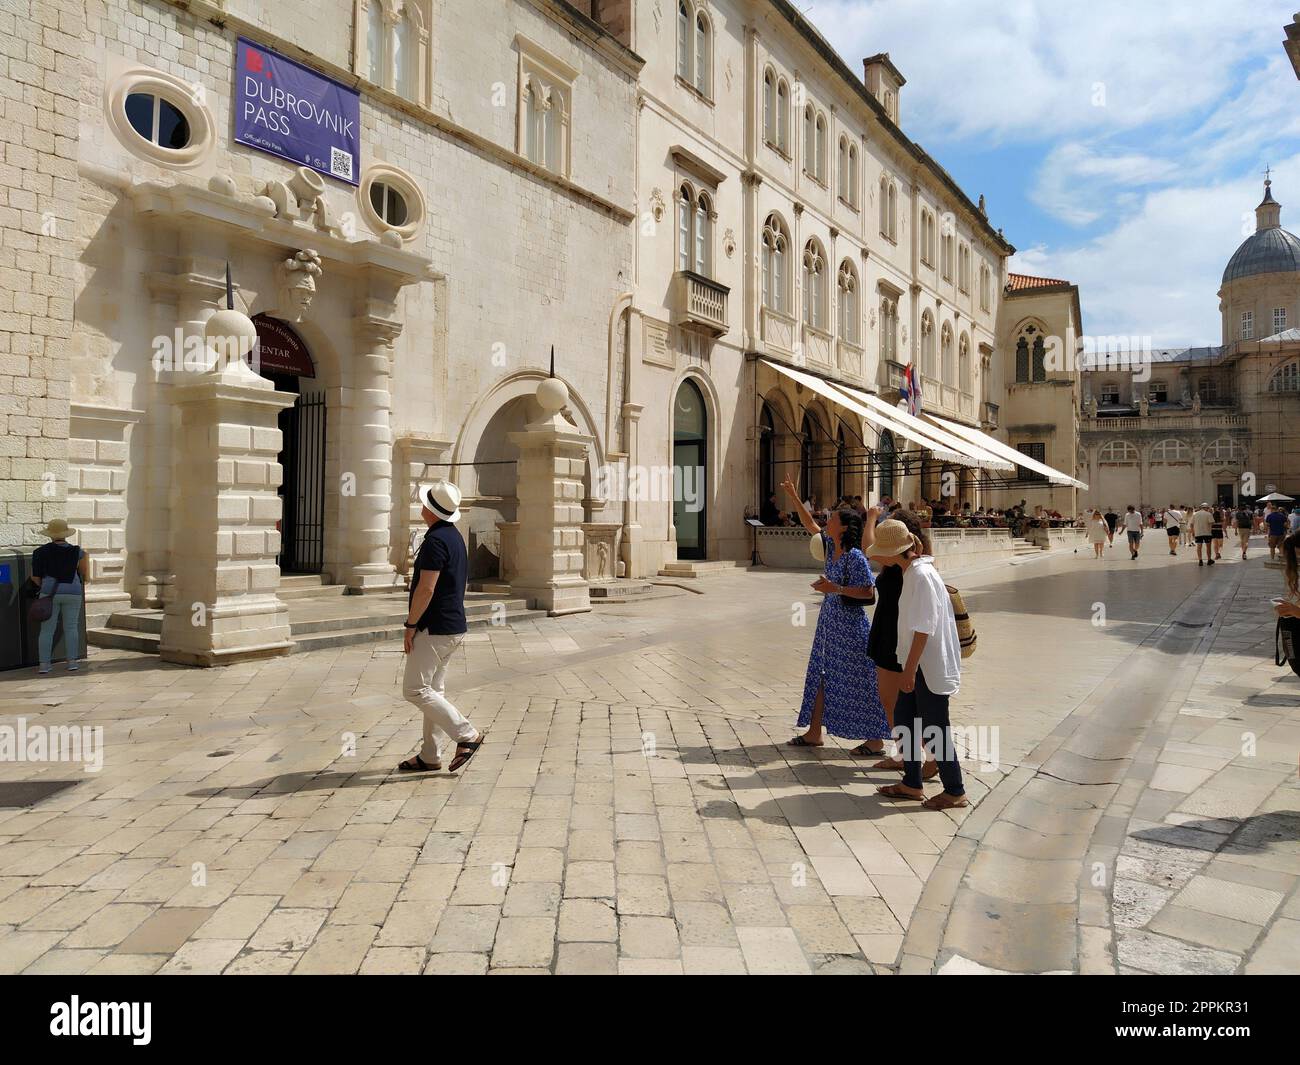 Stradun, Stradone è la strada principale del centro storico di Dubrovnik in Croazia. Attrazioni architettoniche. Un luogo popolare per le passeggiate turistiche. Le persone camminano 08.14.2022 viaggi di lavoro turistici Foto Stock